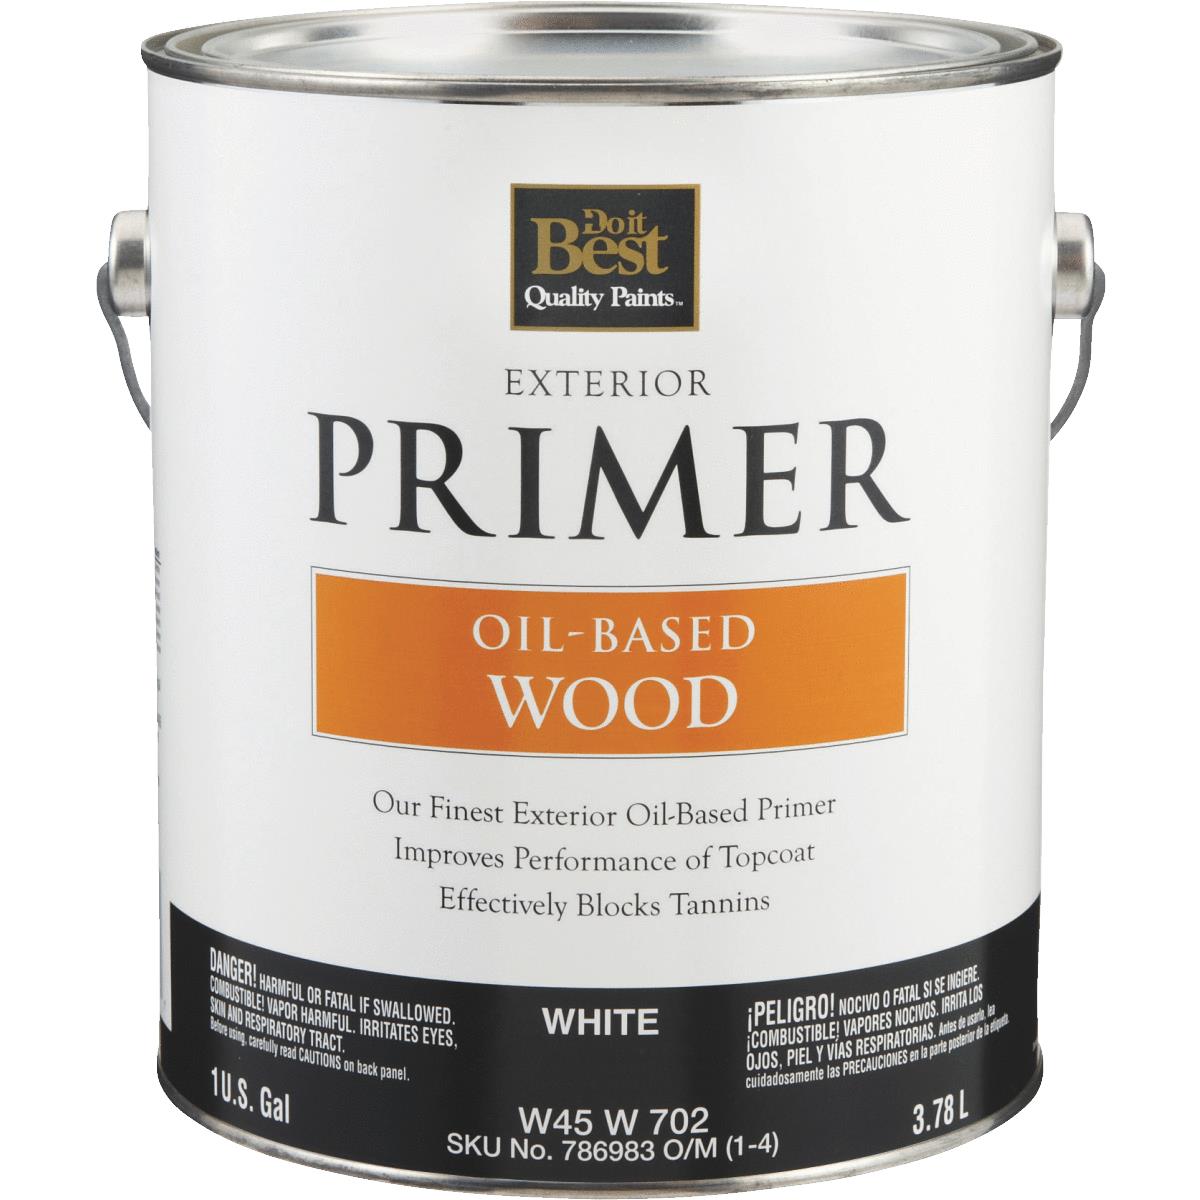 Buy Do it Best OilBased Wood Exterior Primer